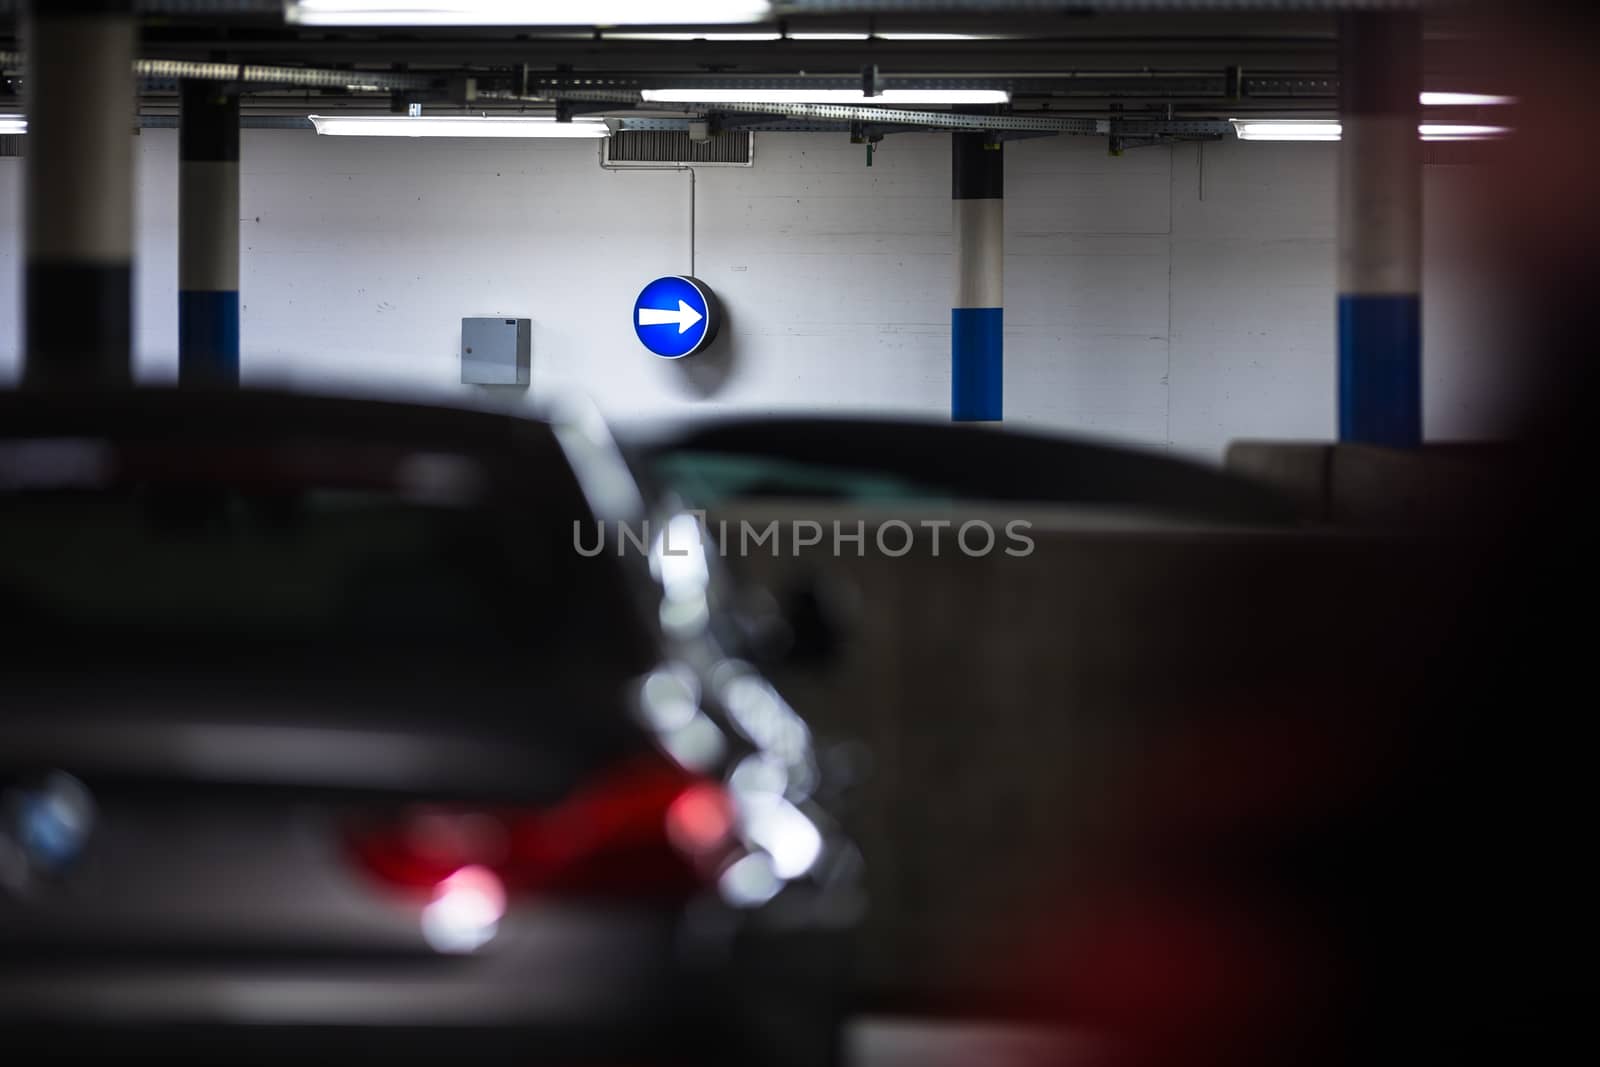 Underground parking/garage